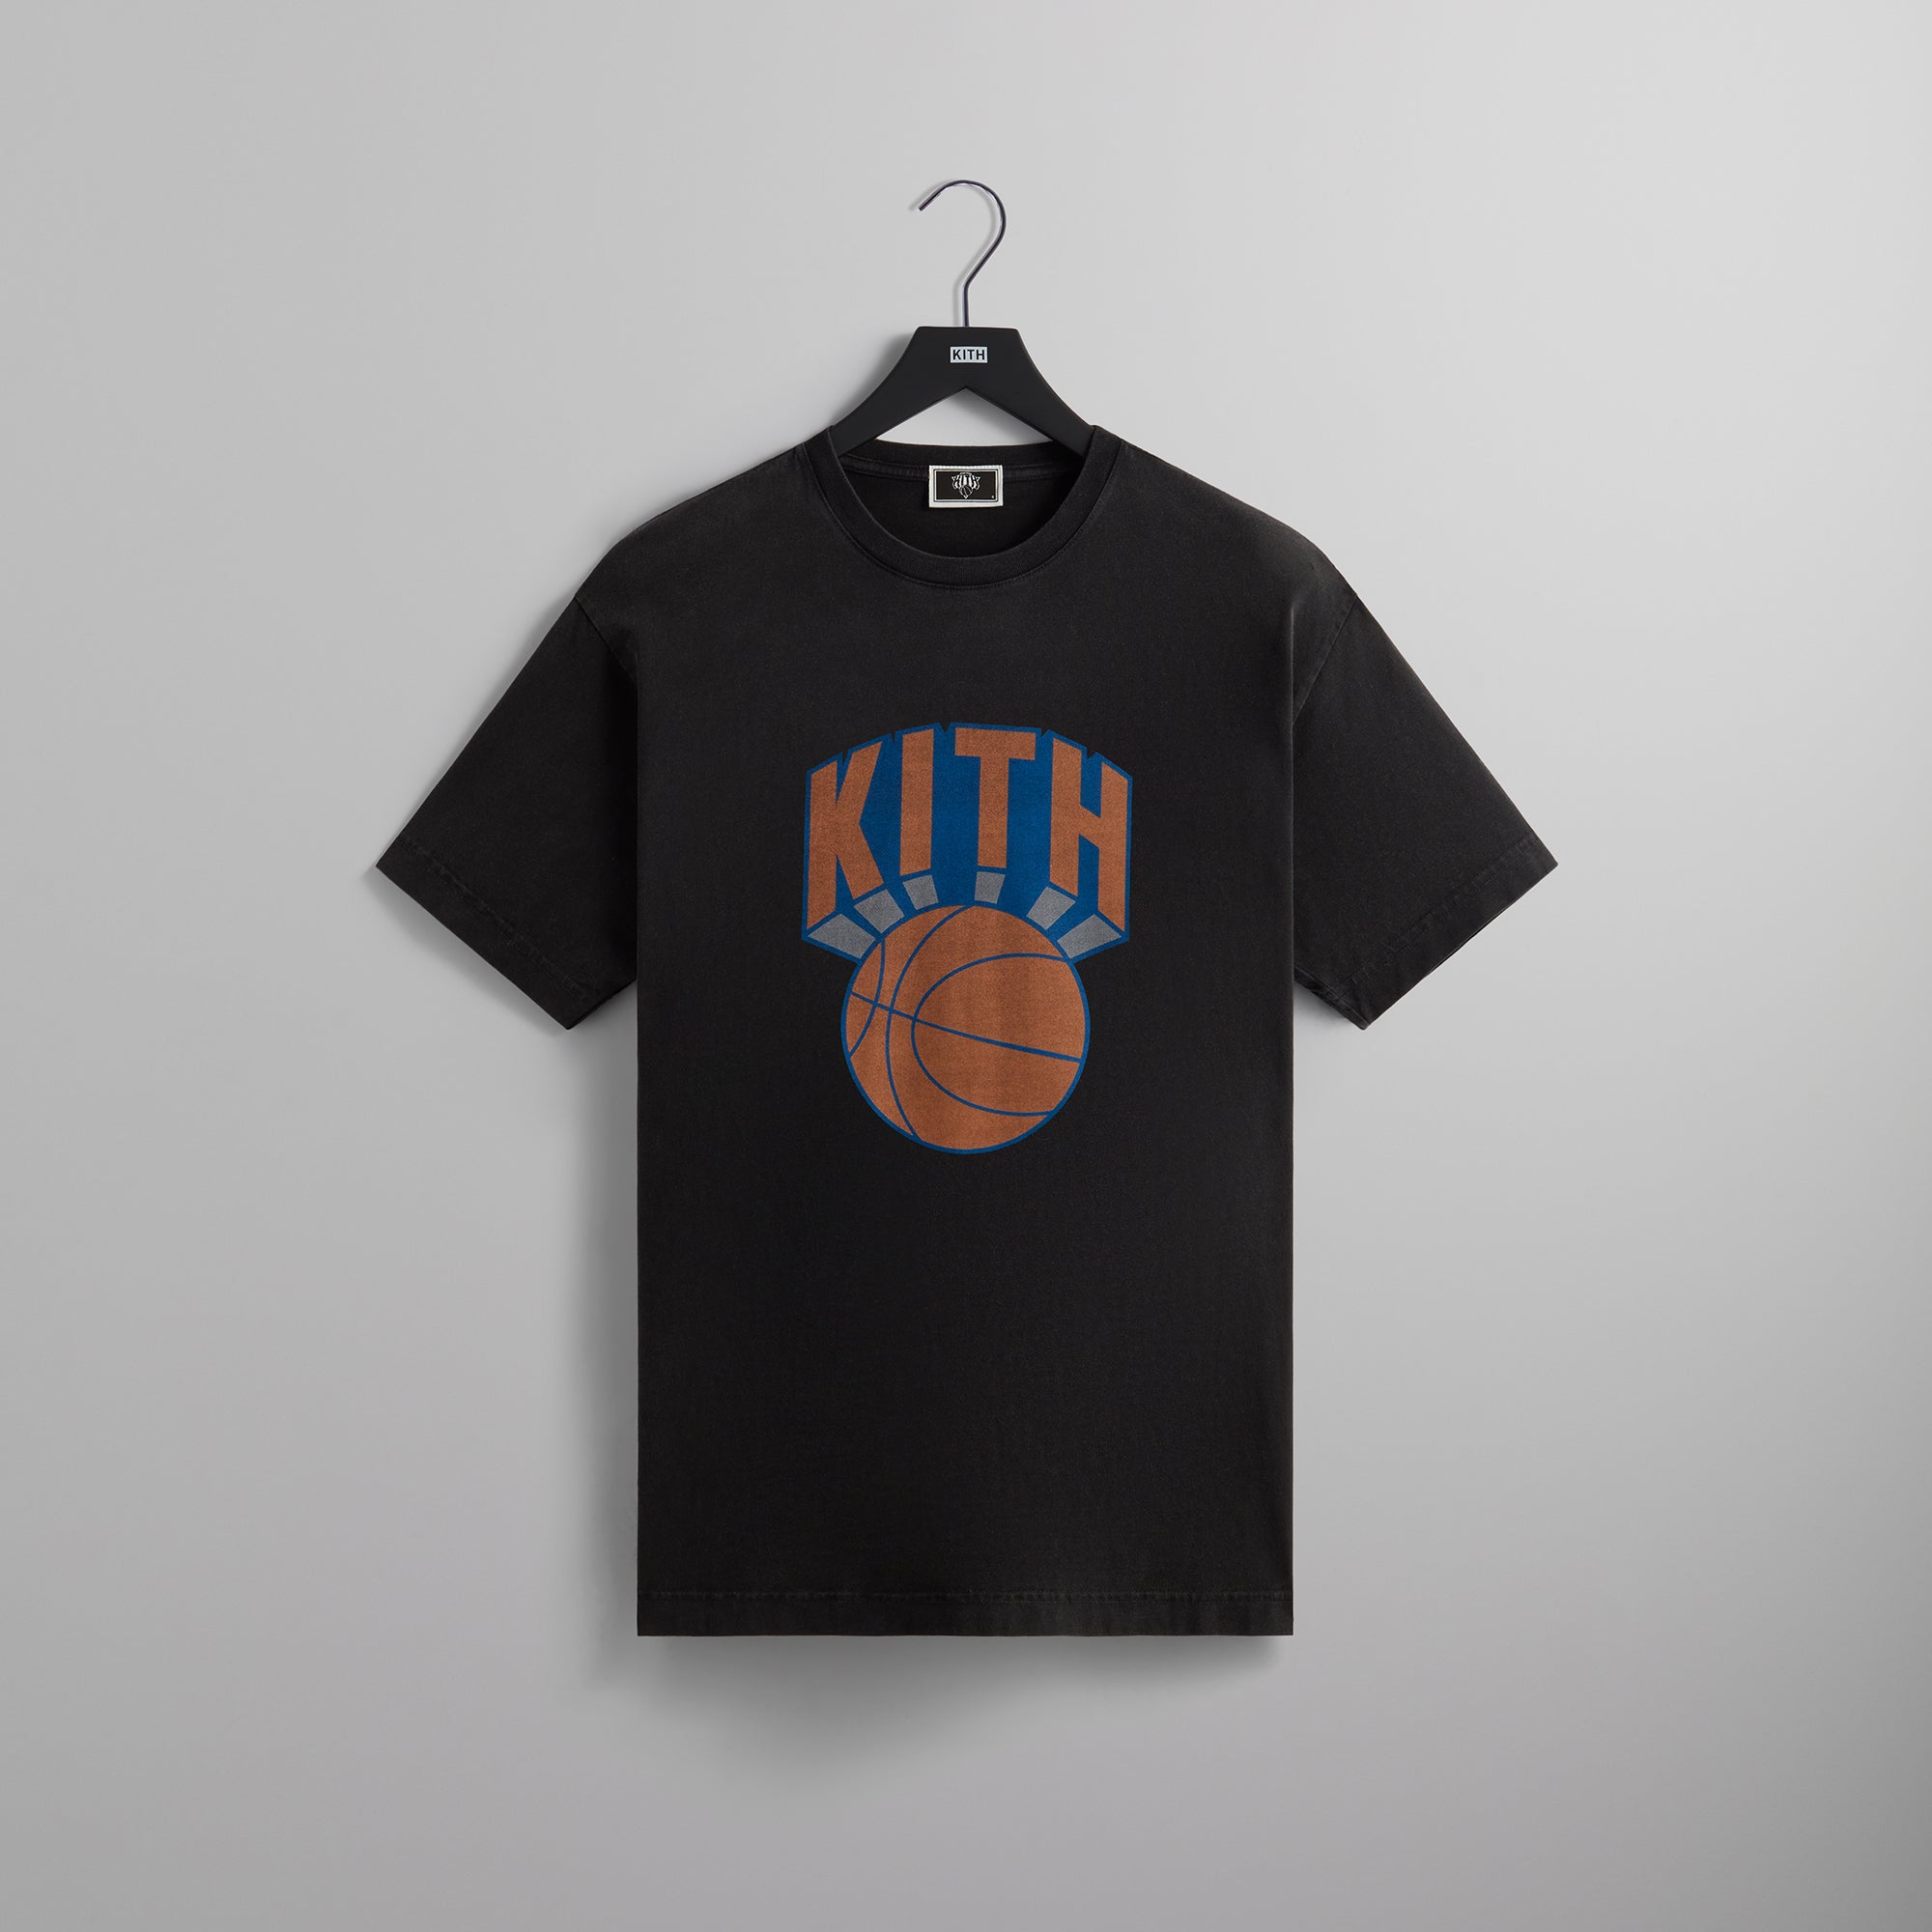 Kith for the New York Knicks Retro NY Vintage Tee - Black – Kith 